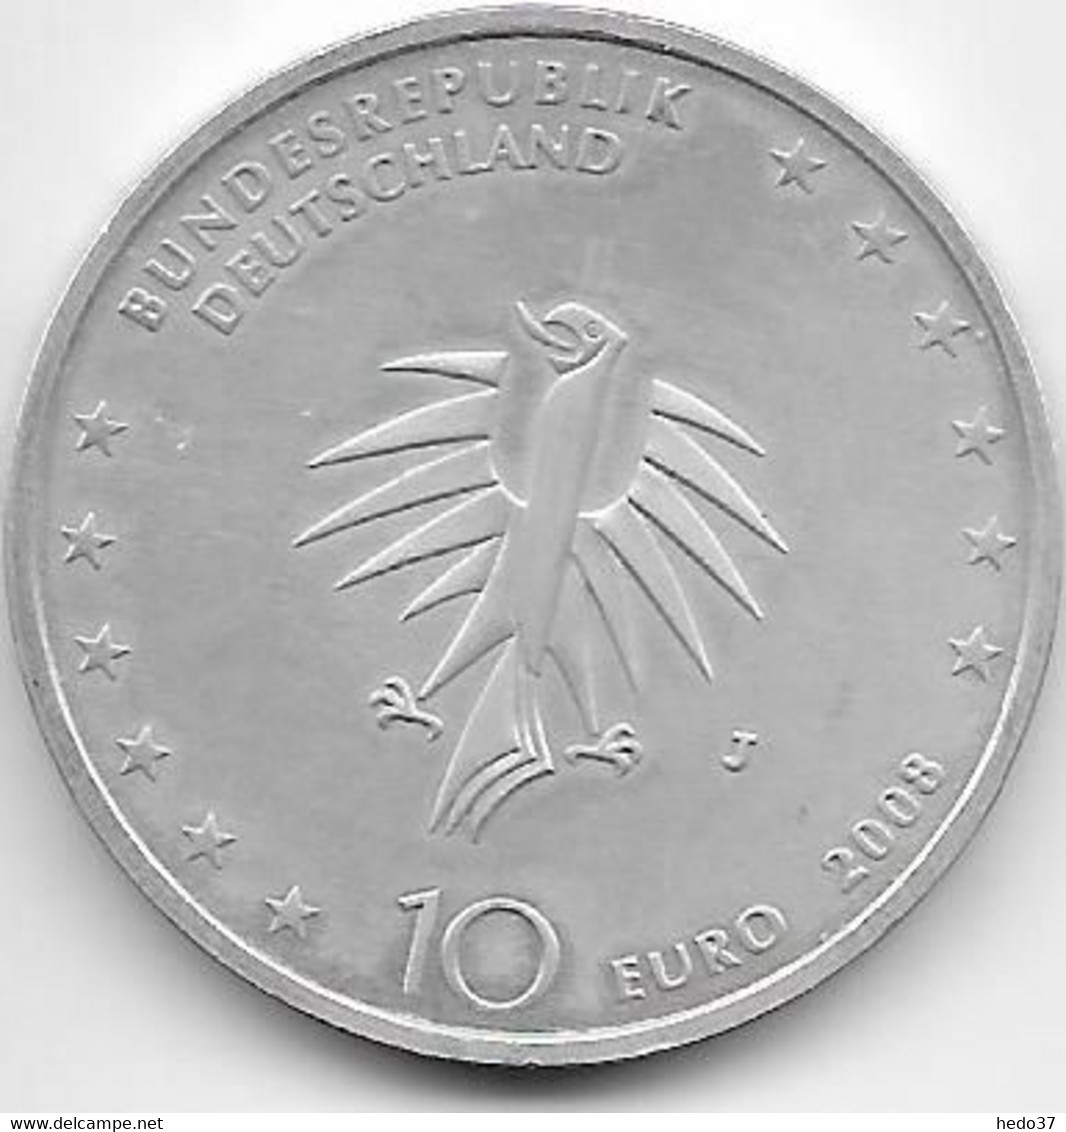 Allemagne - 10 Euro € 2008 - Argent - Gedenkmünzen